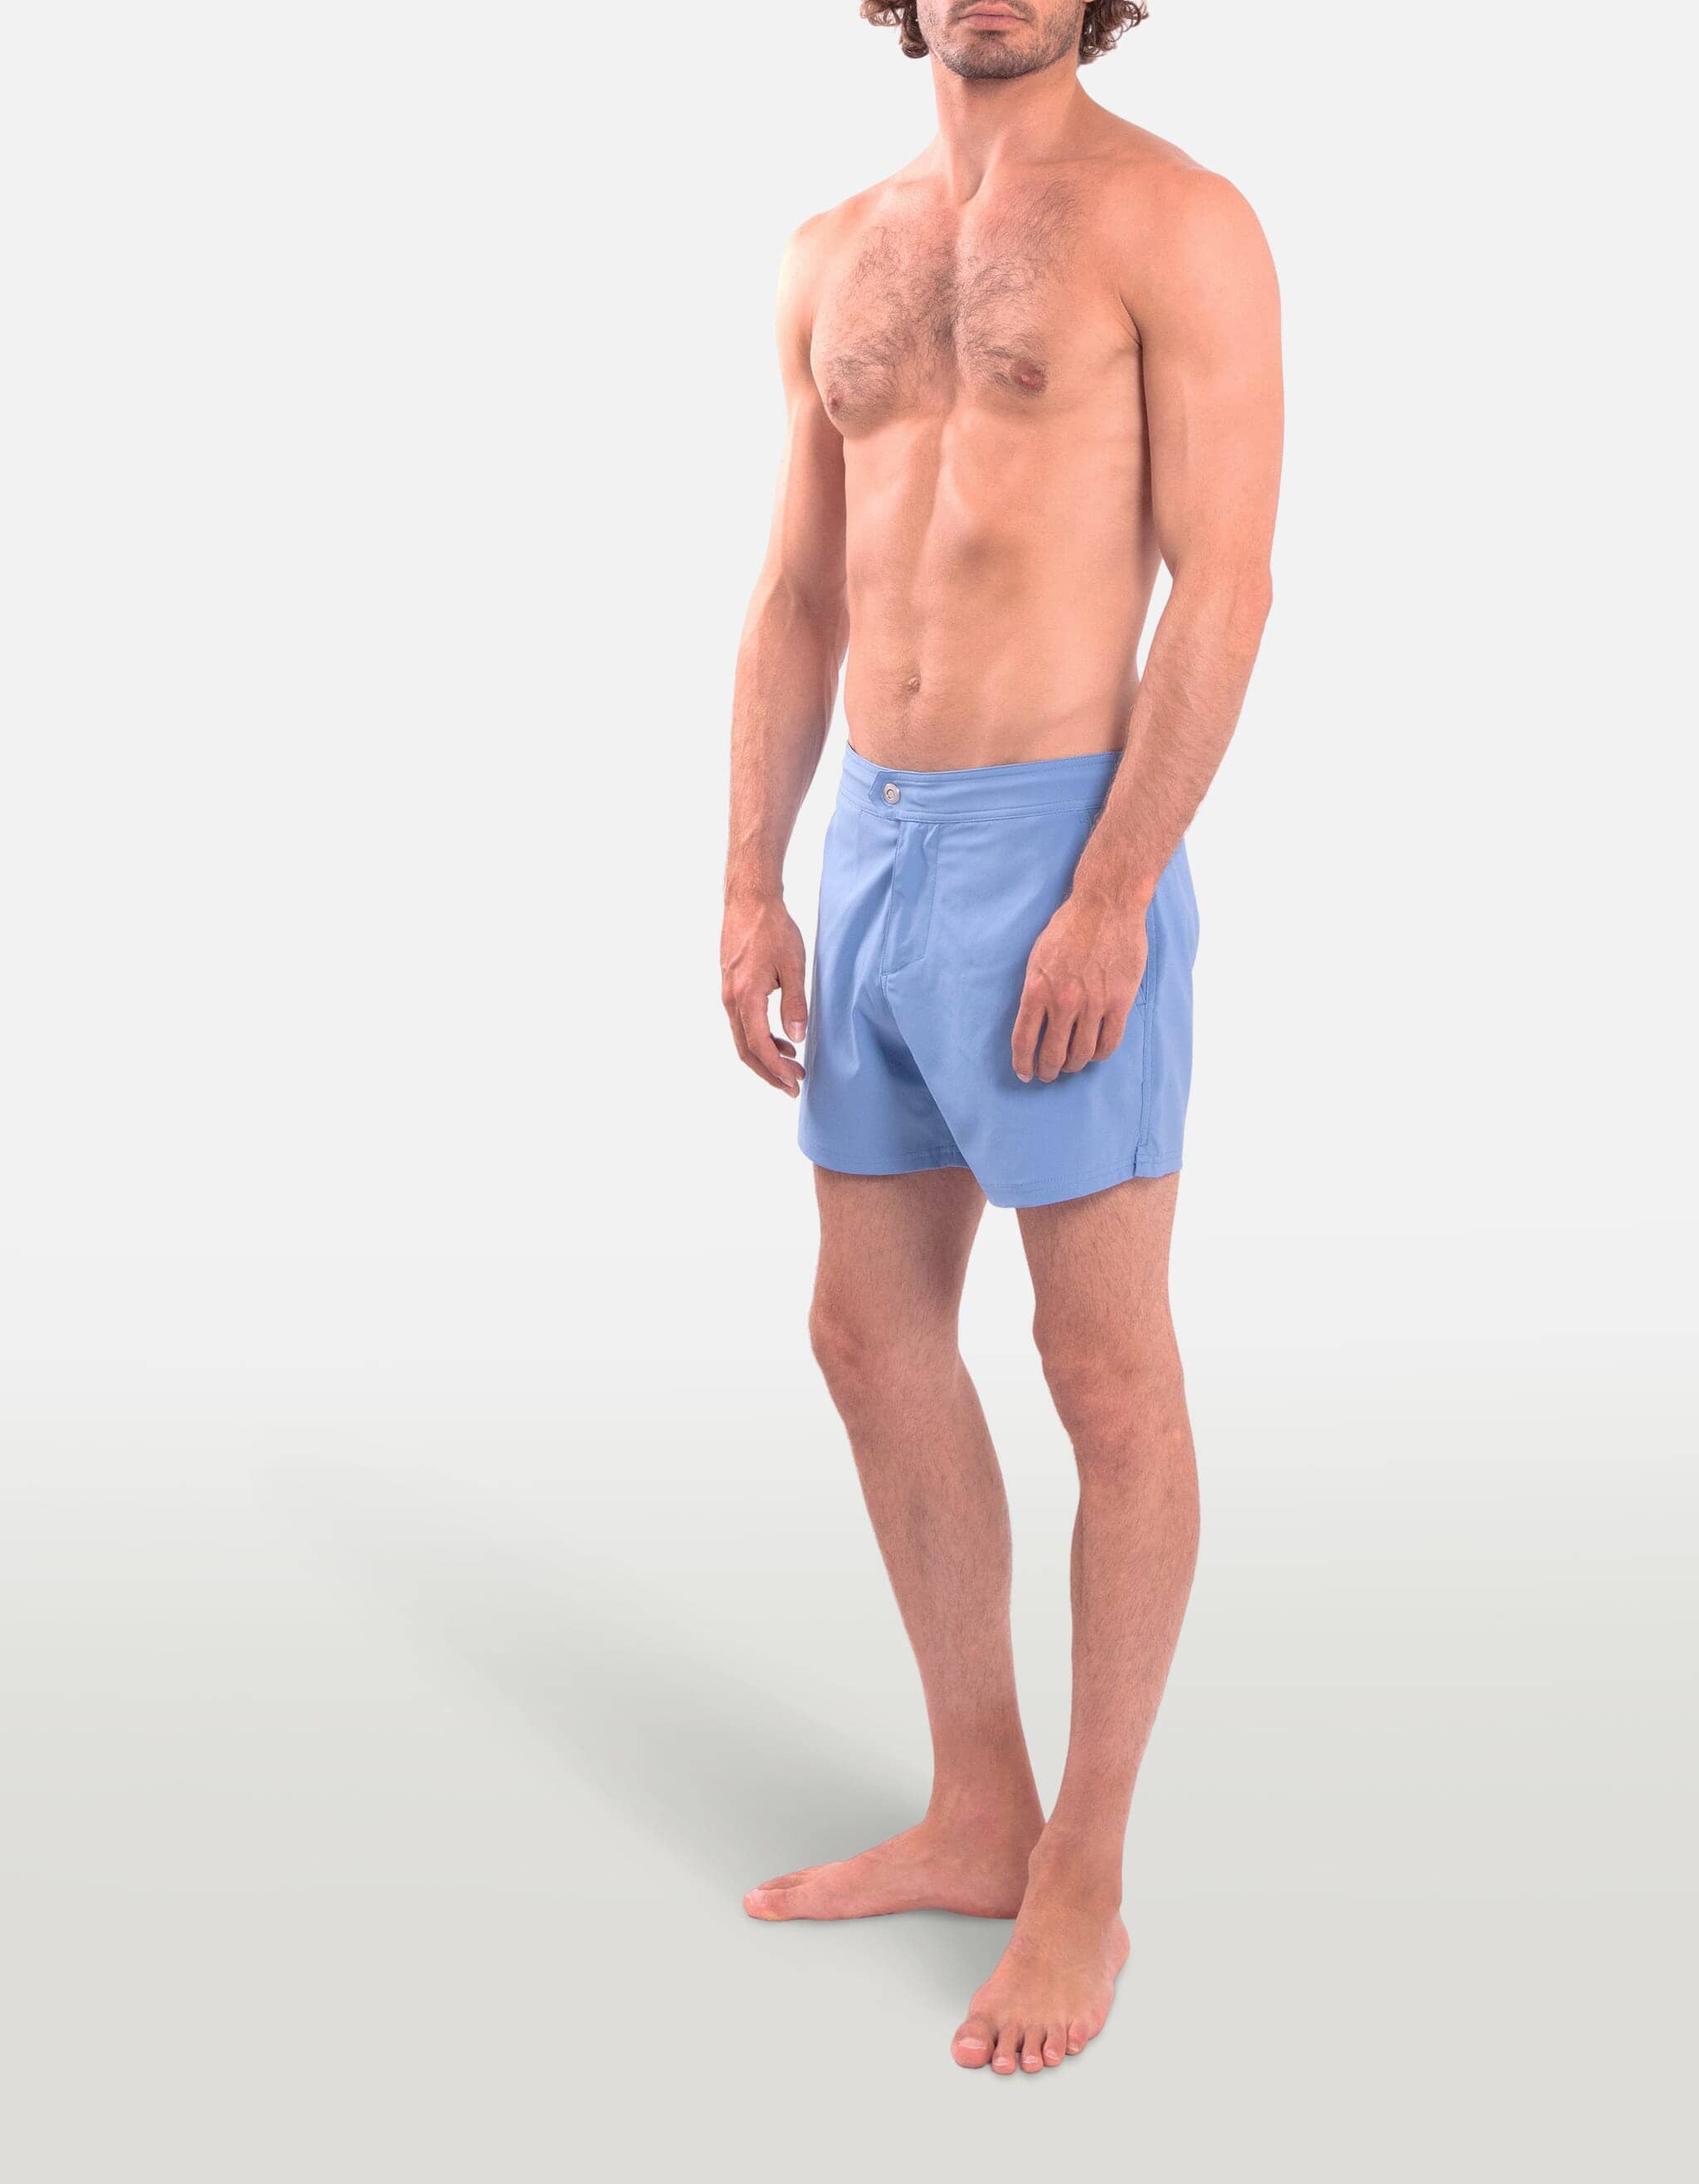 Ben - 00. Blue Grey Swim Shorts - Ben MACKEENE 